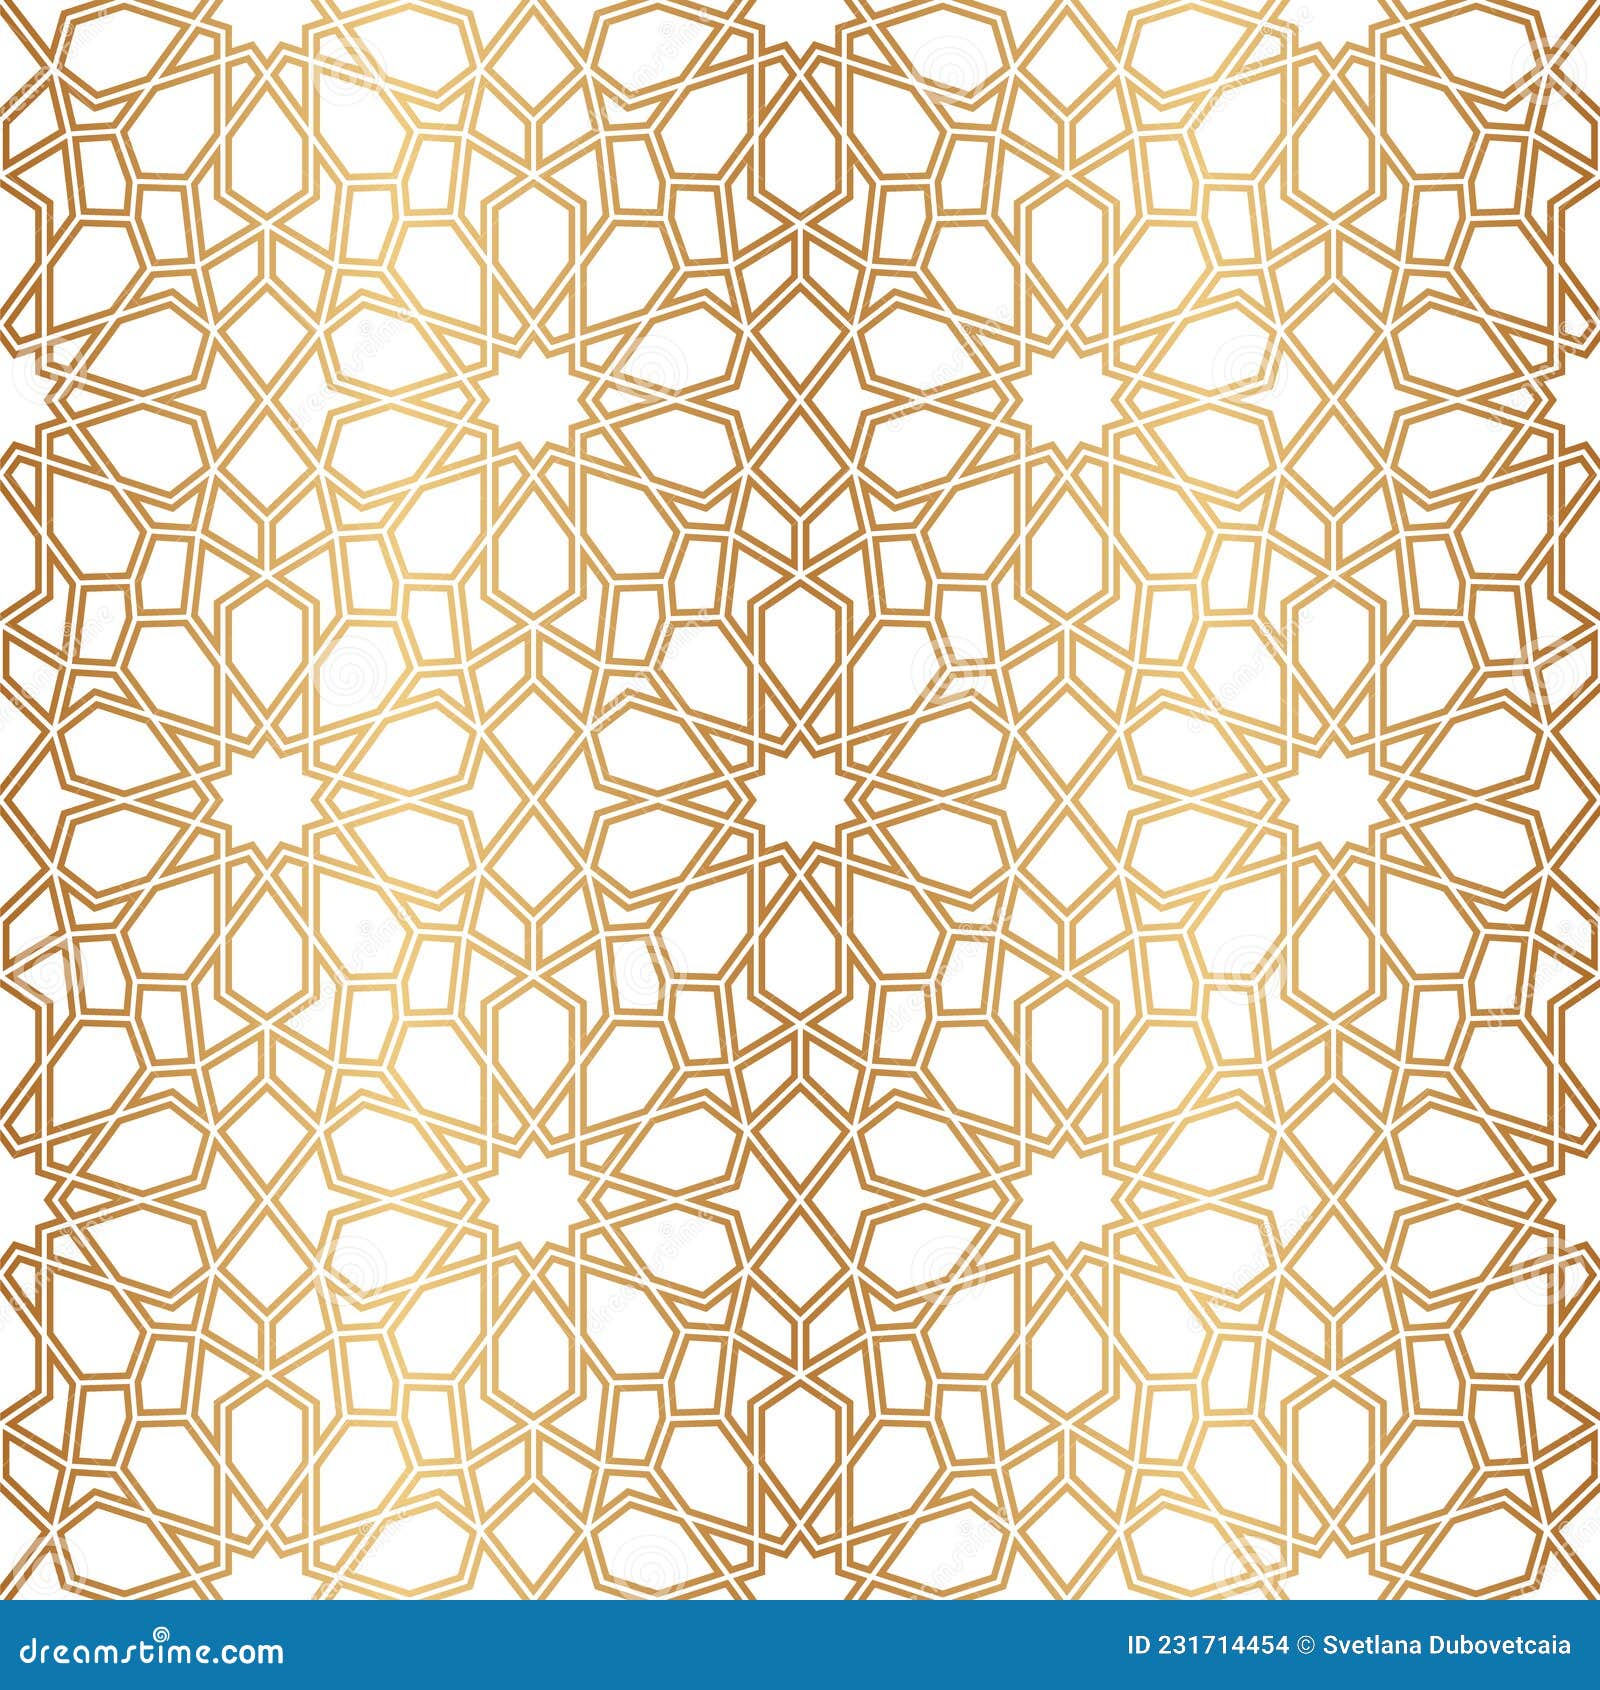 Chúng tôi cung cấp những mẫu không đường viền Morocco đẹp mắt và những họa tiết Ottoman vàng đầy phong cách. Bất kể bạn có nhu cầu sử dụng cho bất kỳ ứng dụng thiết kế nào, hãy nhấn vào hình ảnh liên quan để xem những sản phẩm đẹp và chất lượng này.